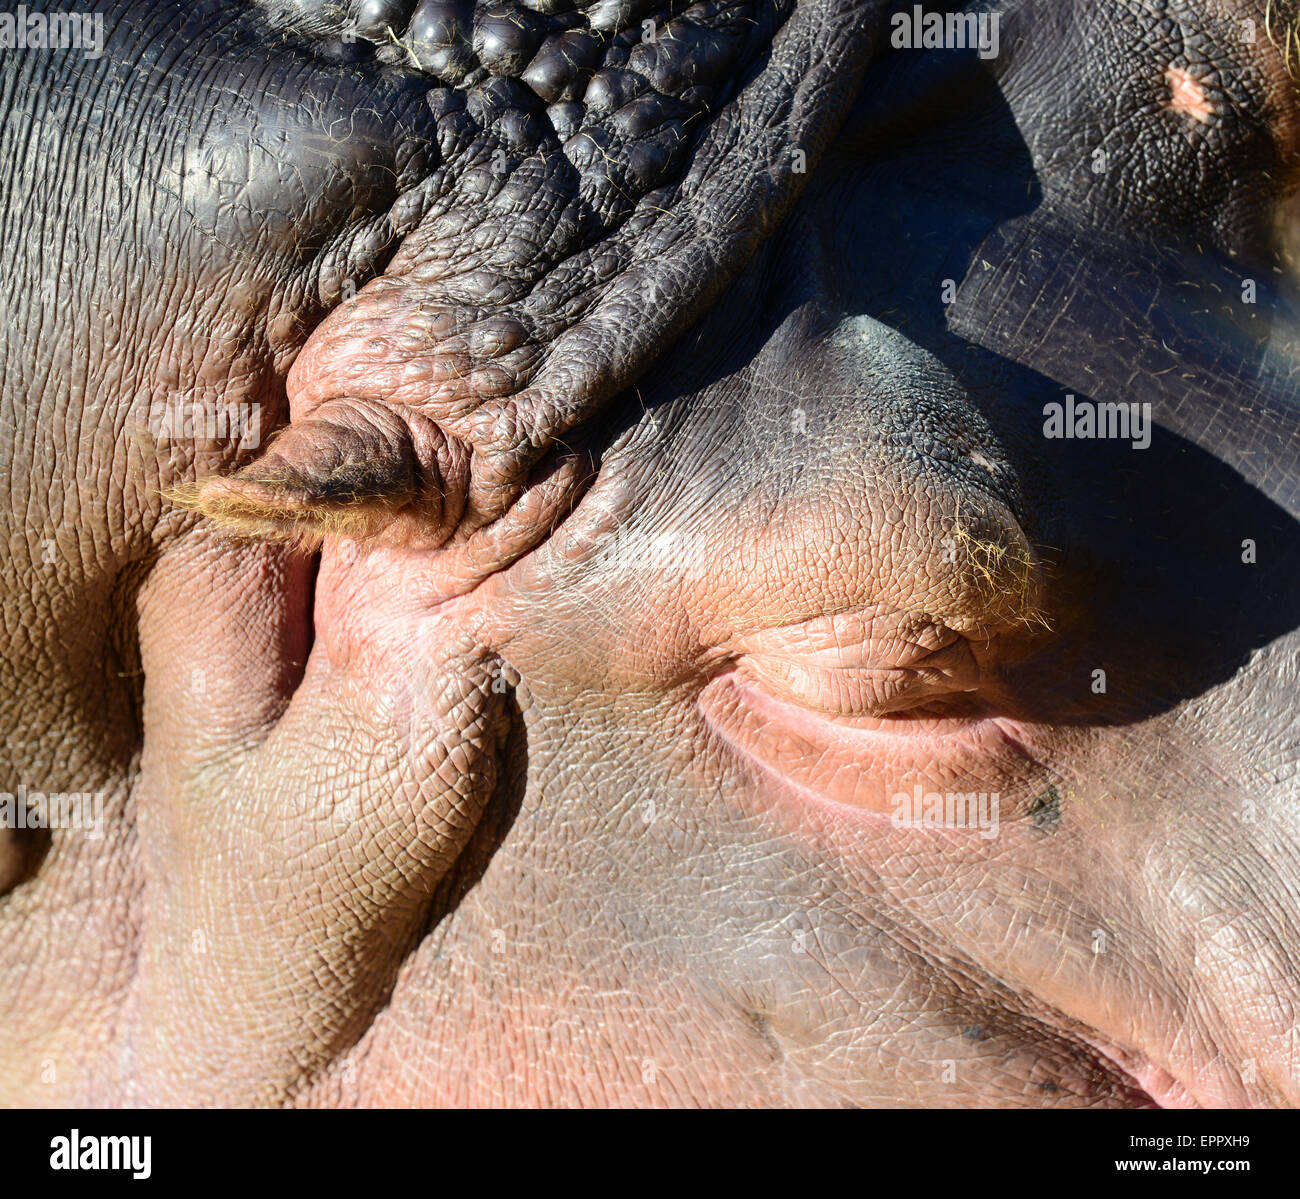 Close up of a sleeping hippopotamus Stock Photo